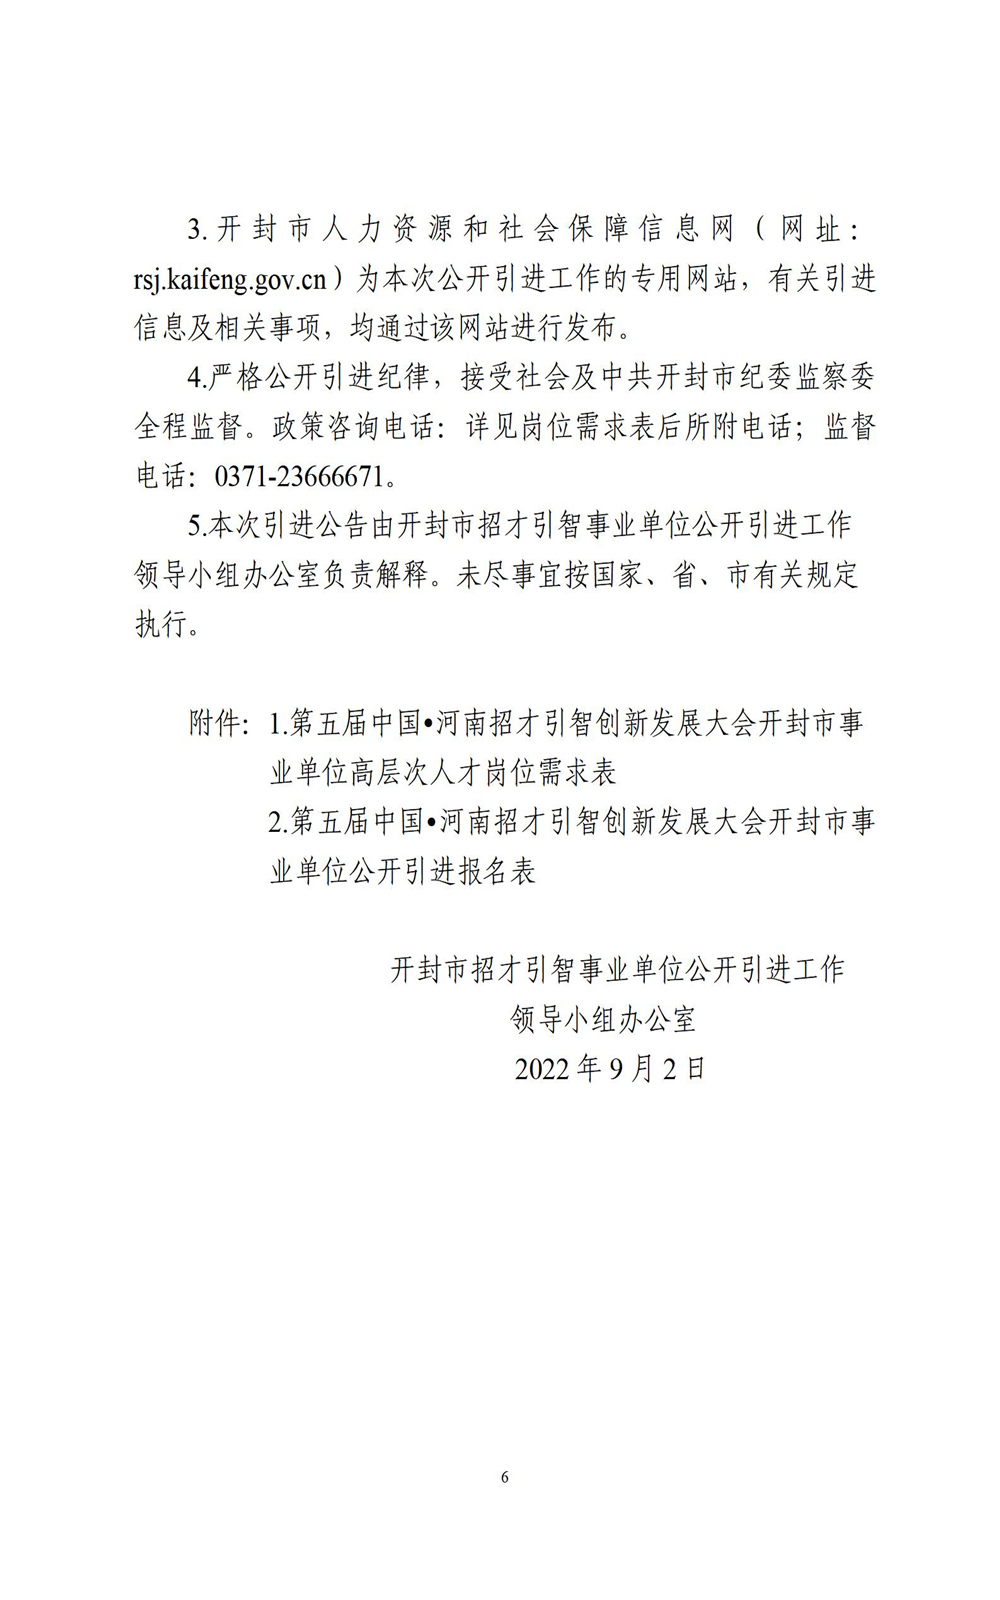 中国•河南招才引智创新发展大会2022年开封市事业单位公开引进工作人员公告_06.jpg